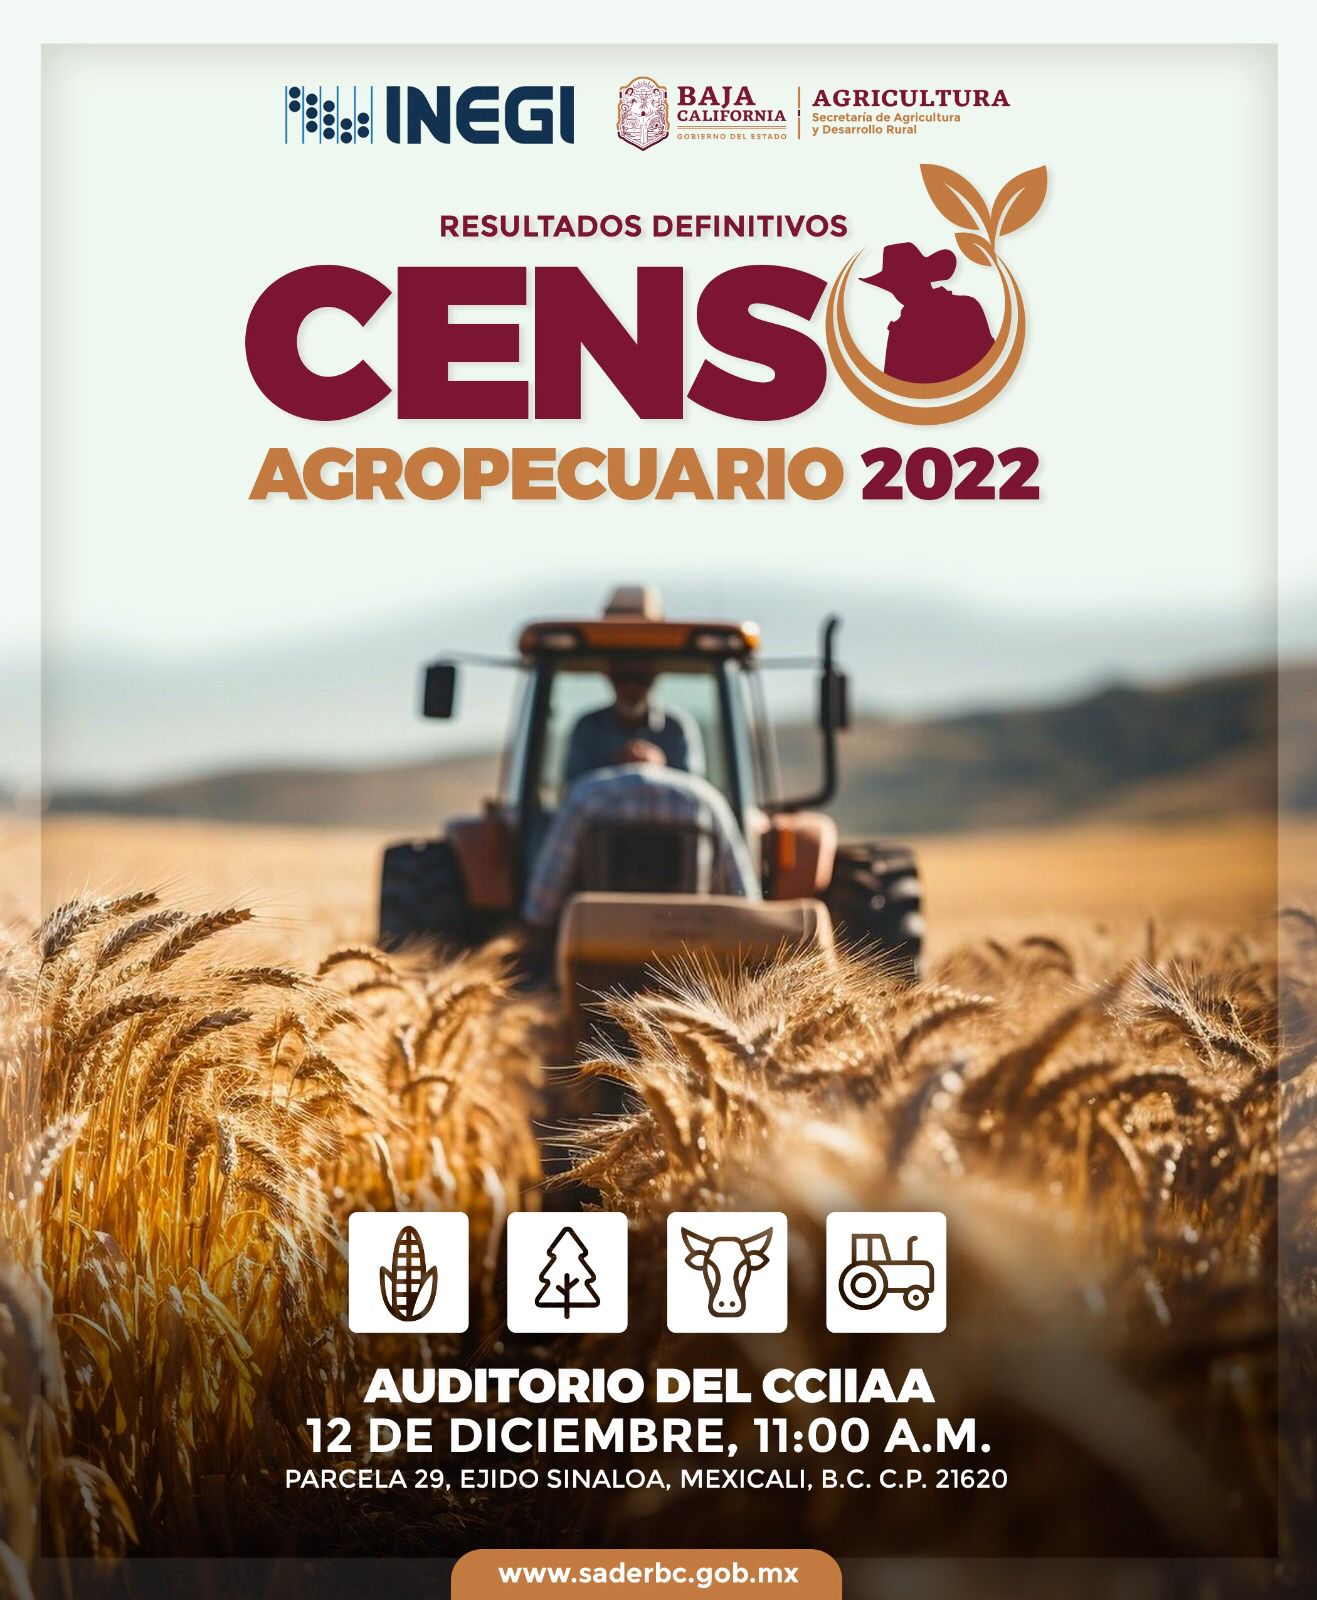 INVITA SADER BC A PRESENTACIÓN DE RESULTADOS DEL CENSO AGROPECUARIO 2022